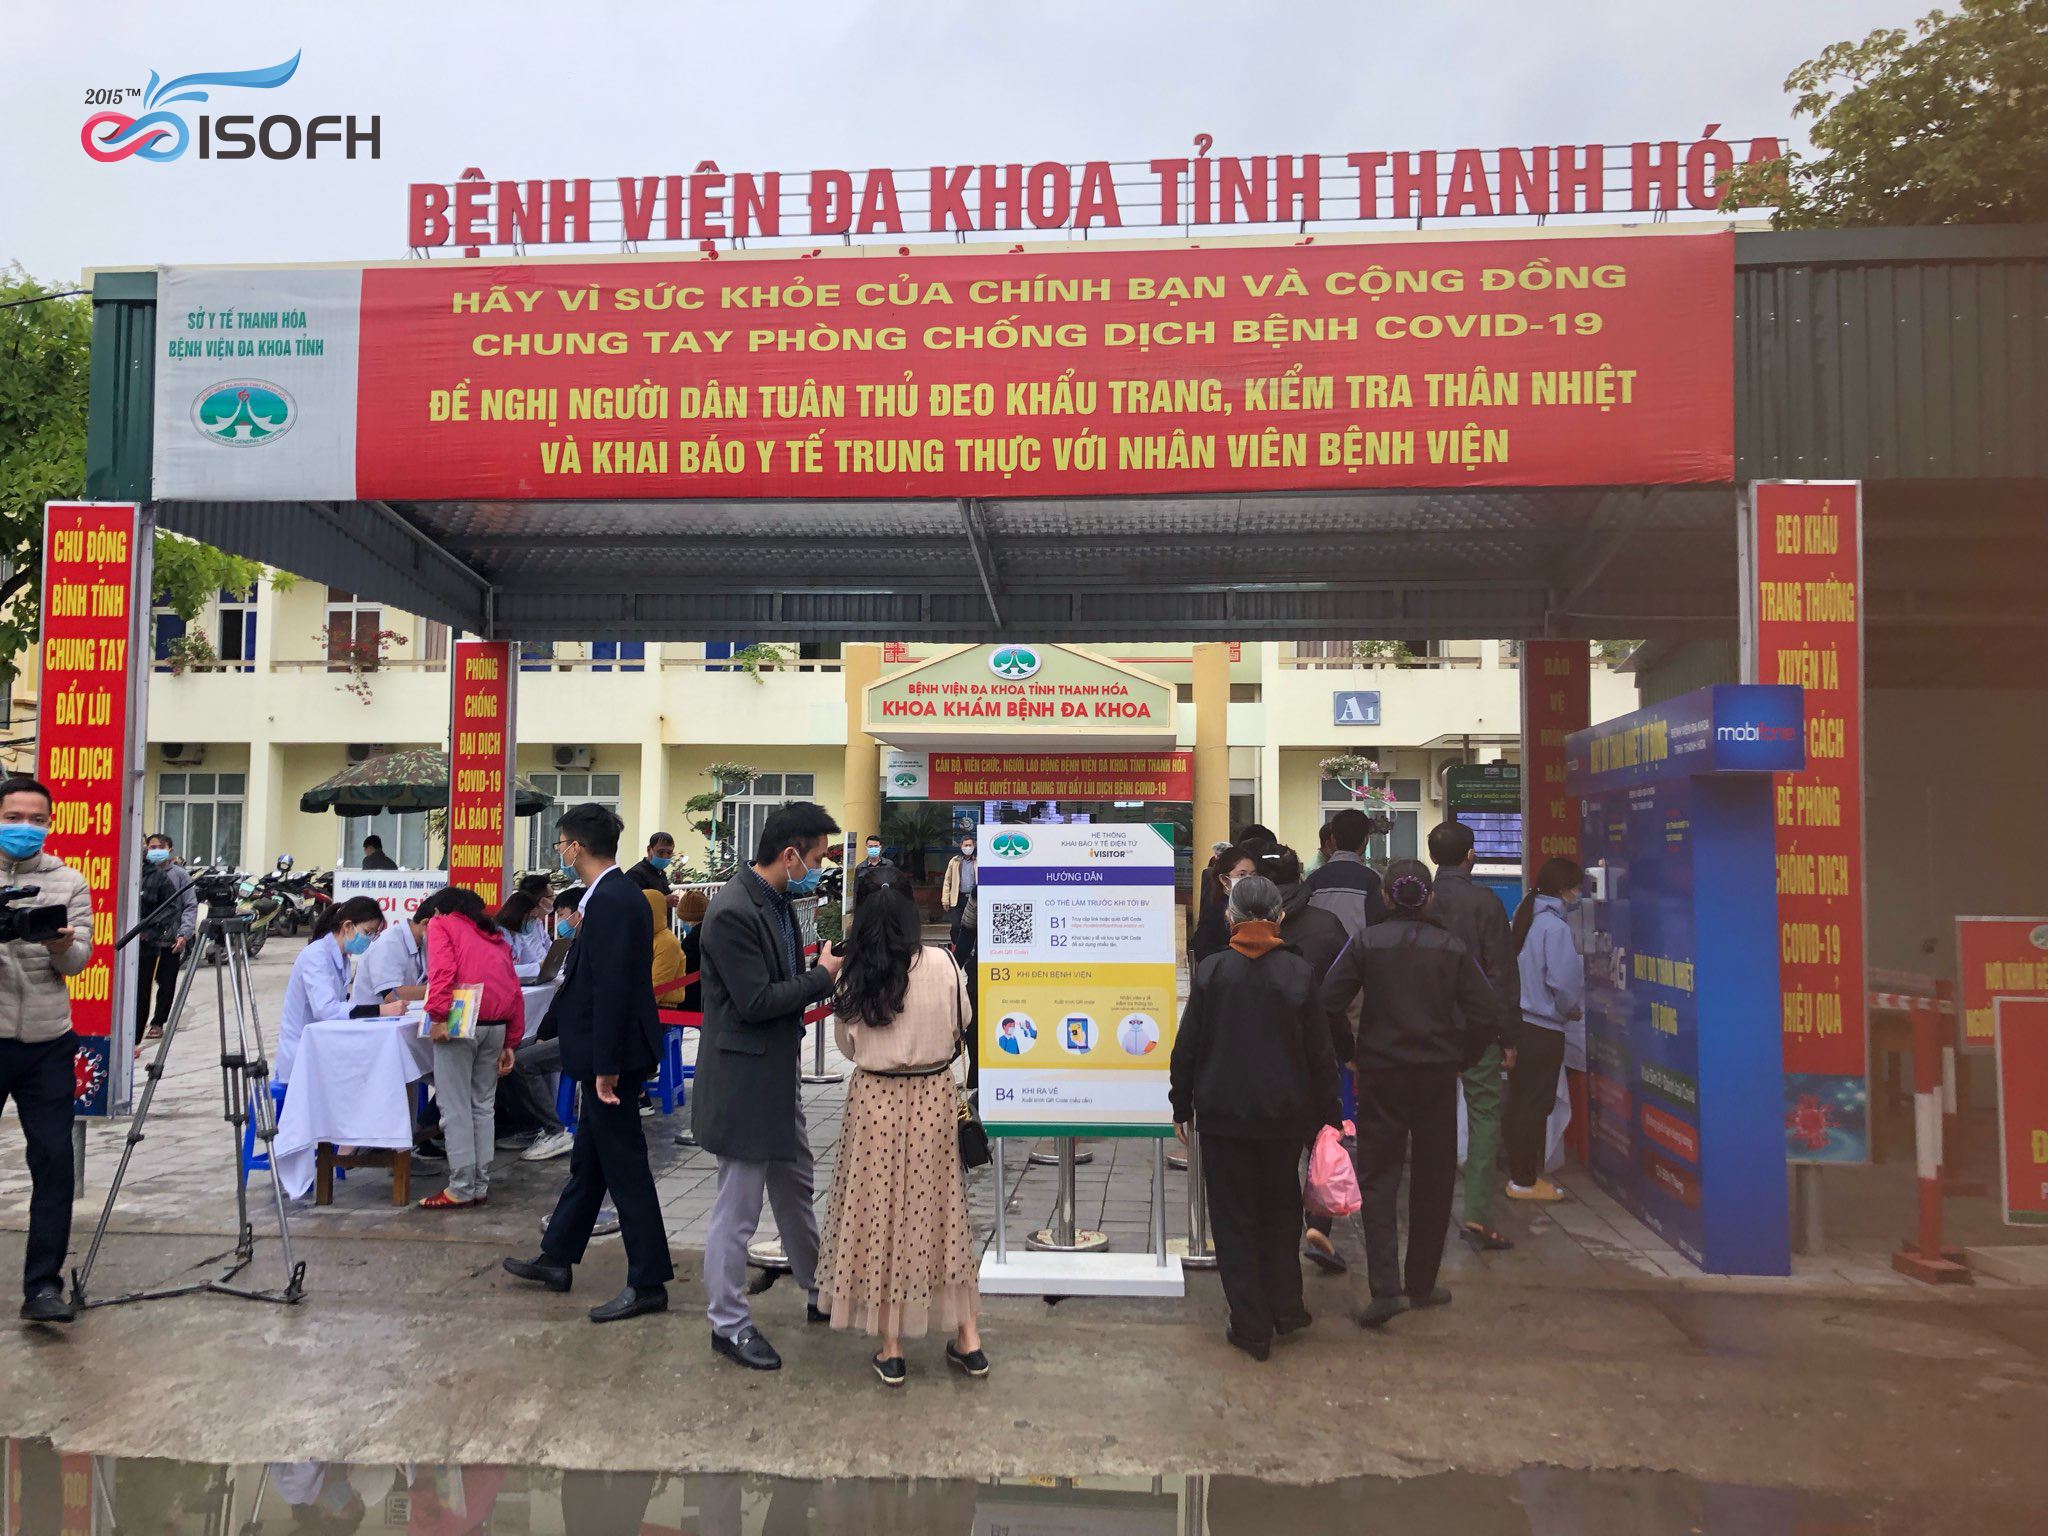 Khai báo y tế điện tử iVisitor tại BV ĐK tỉnh Thanh Hóa